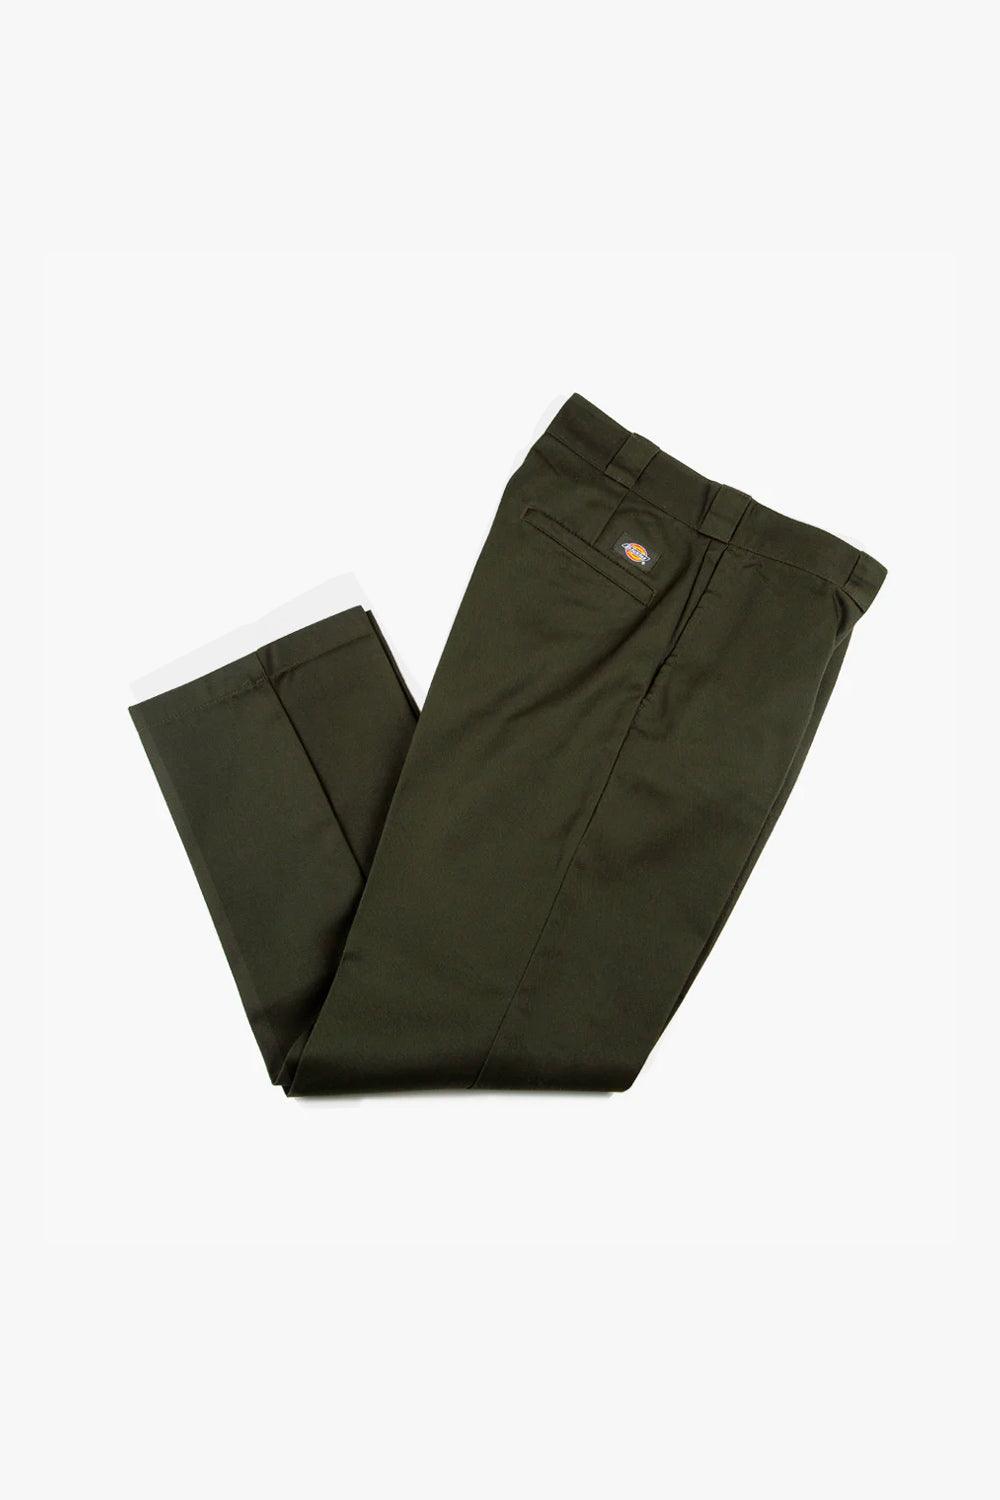 http://suuupply.com/cdn/shop/products/dickies-pantalon-worker-874-original-vert-olive-suuupply-1.jpg?v=1661368575